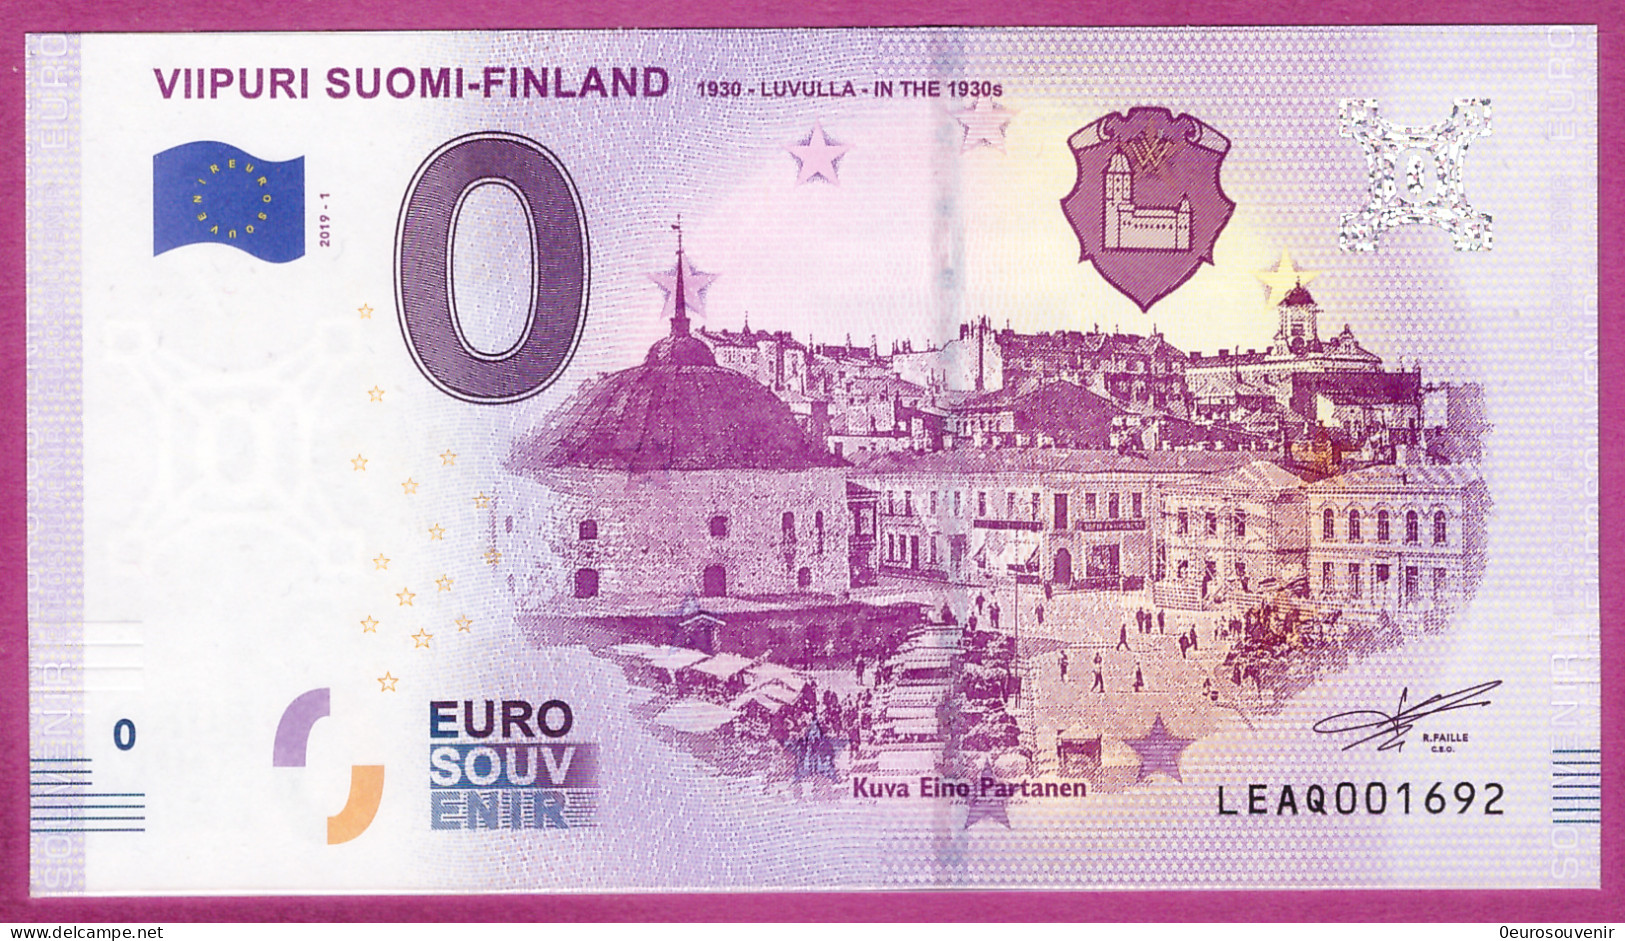 0-Euro LEAQ 2019-1 VIIPURI SUOMI-FINLAND 1930-LUVULLA-IN THE 1930s - Pruebas Privadas